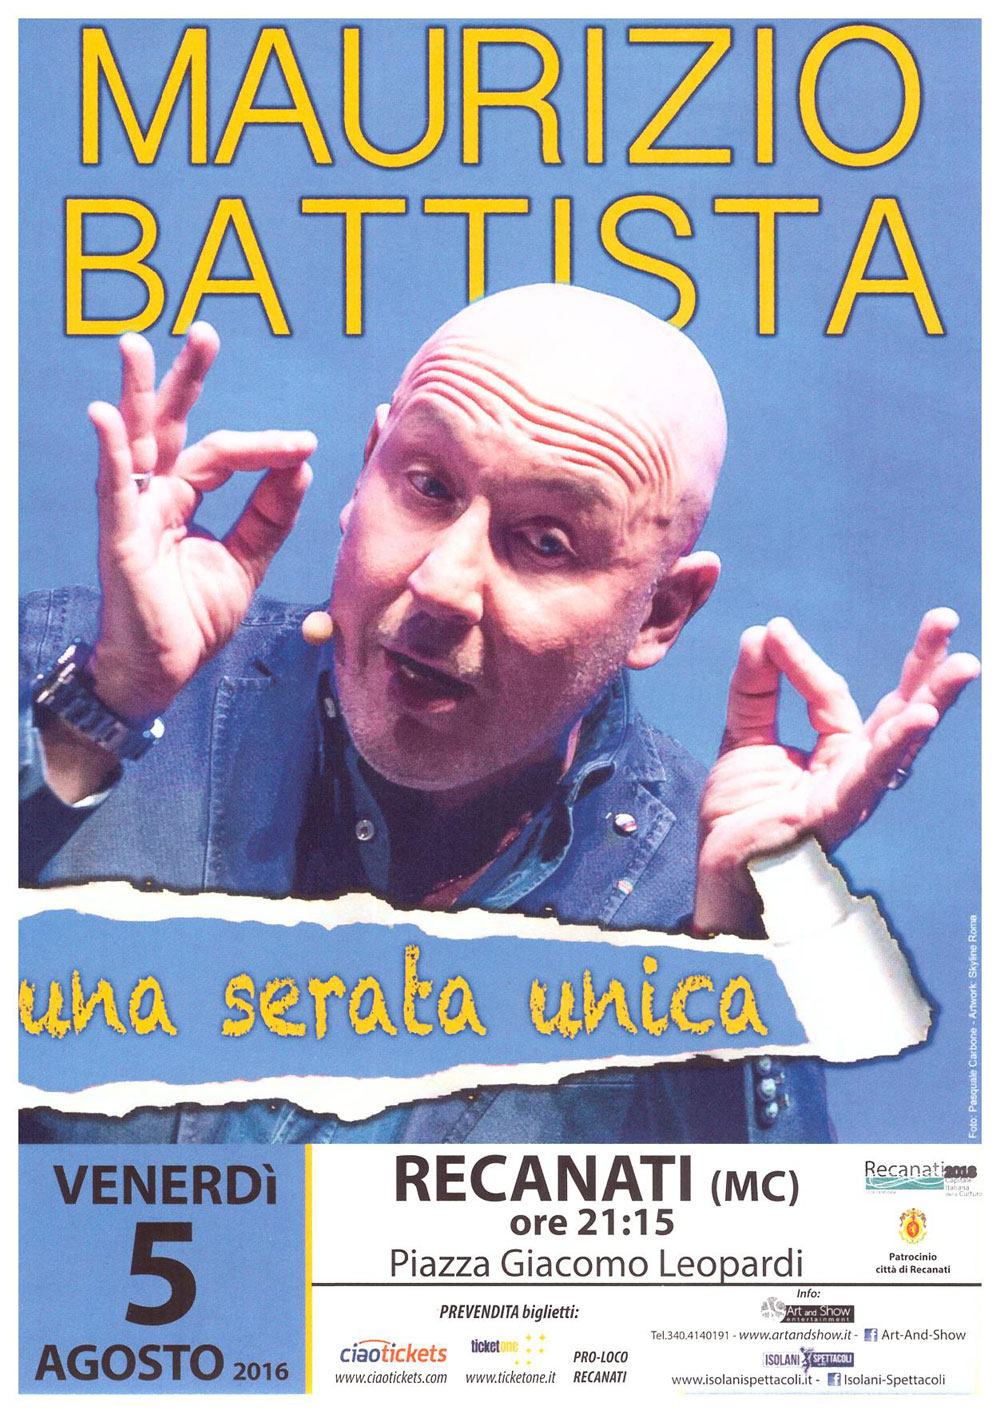 Battista promo